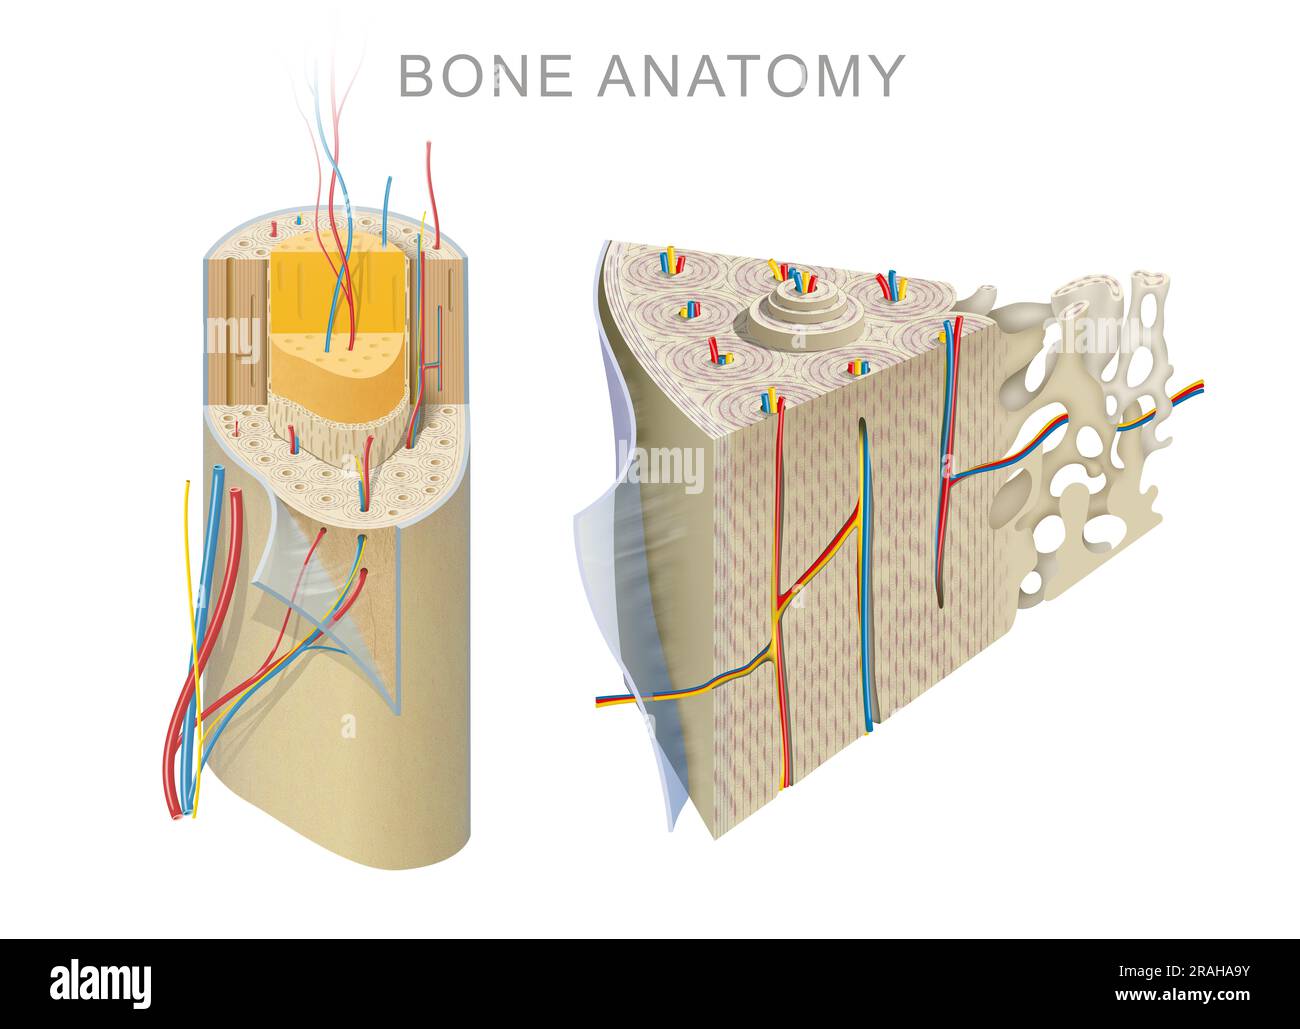 Anatomie d'un os long Banque D'Images